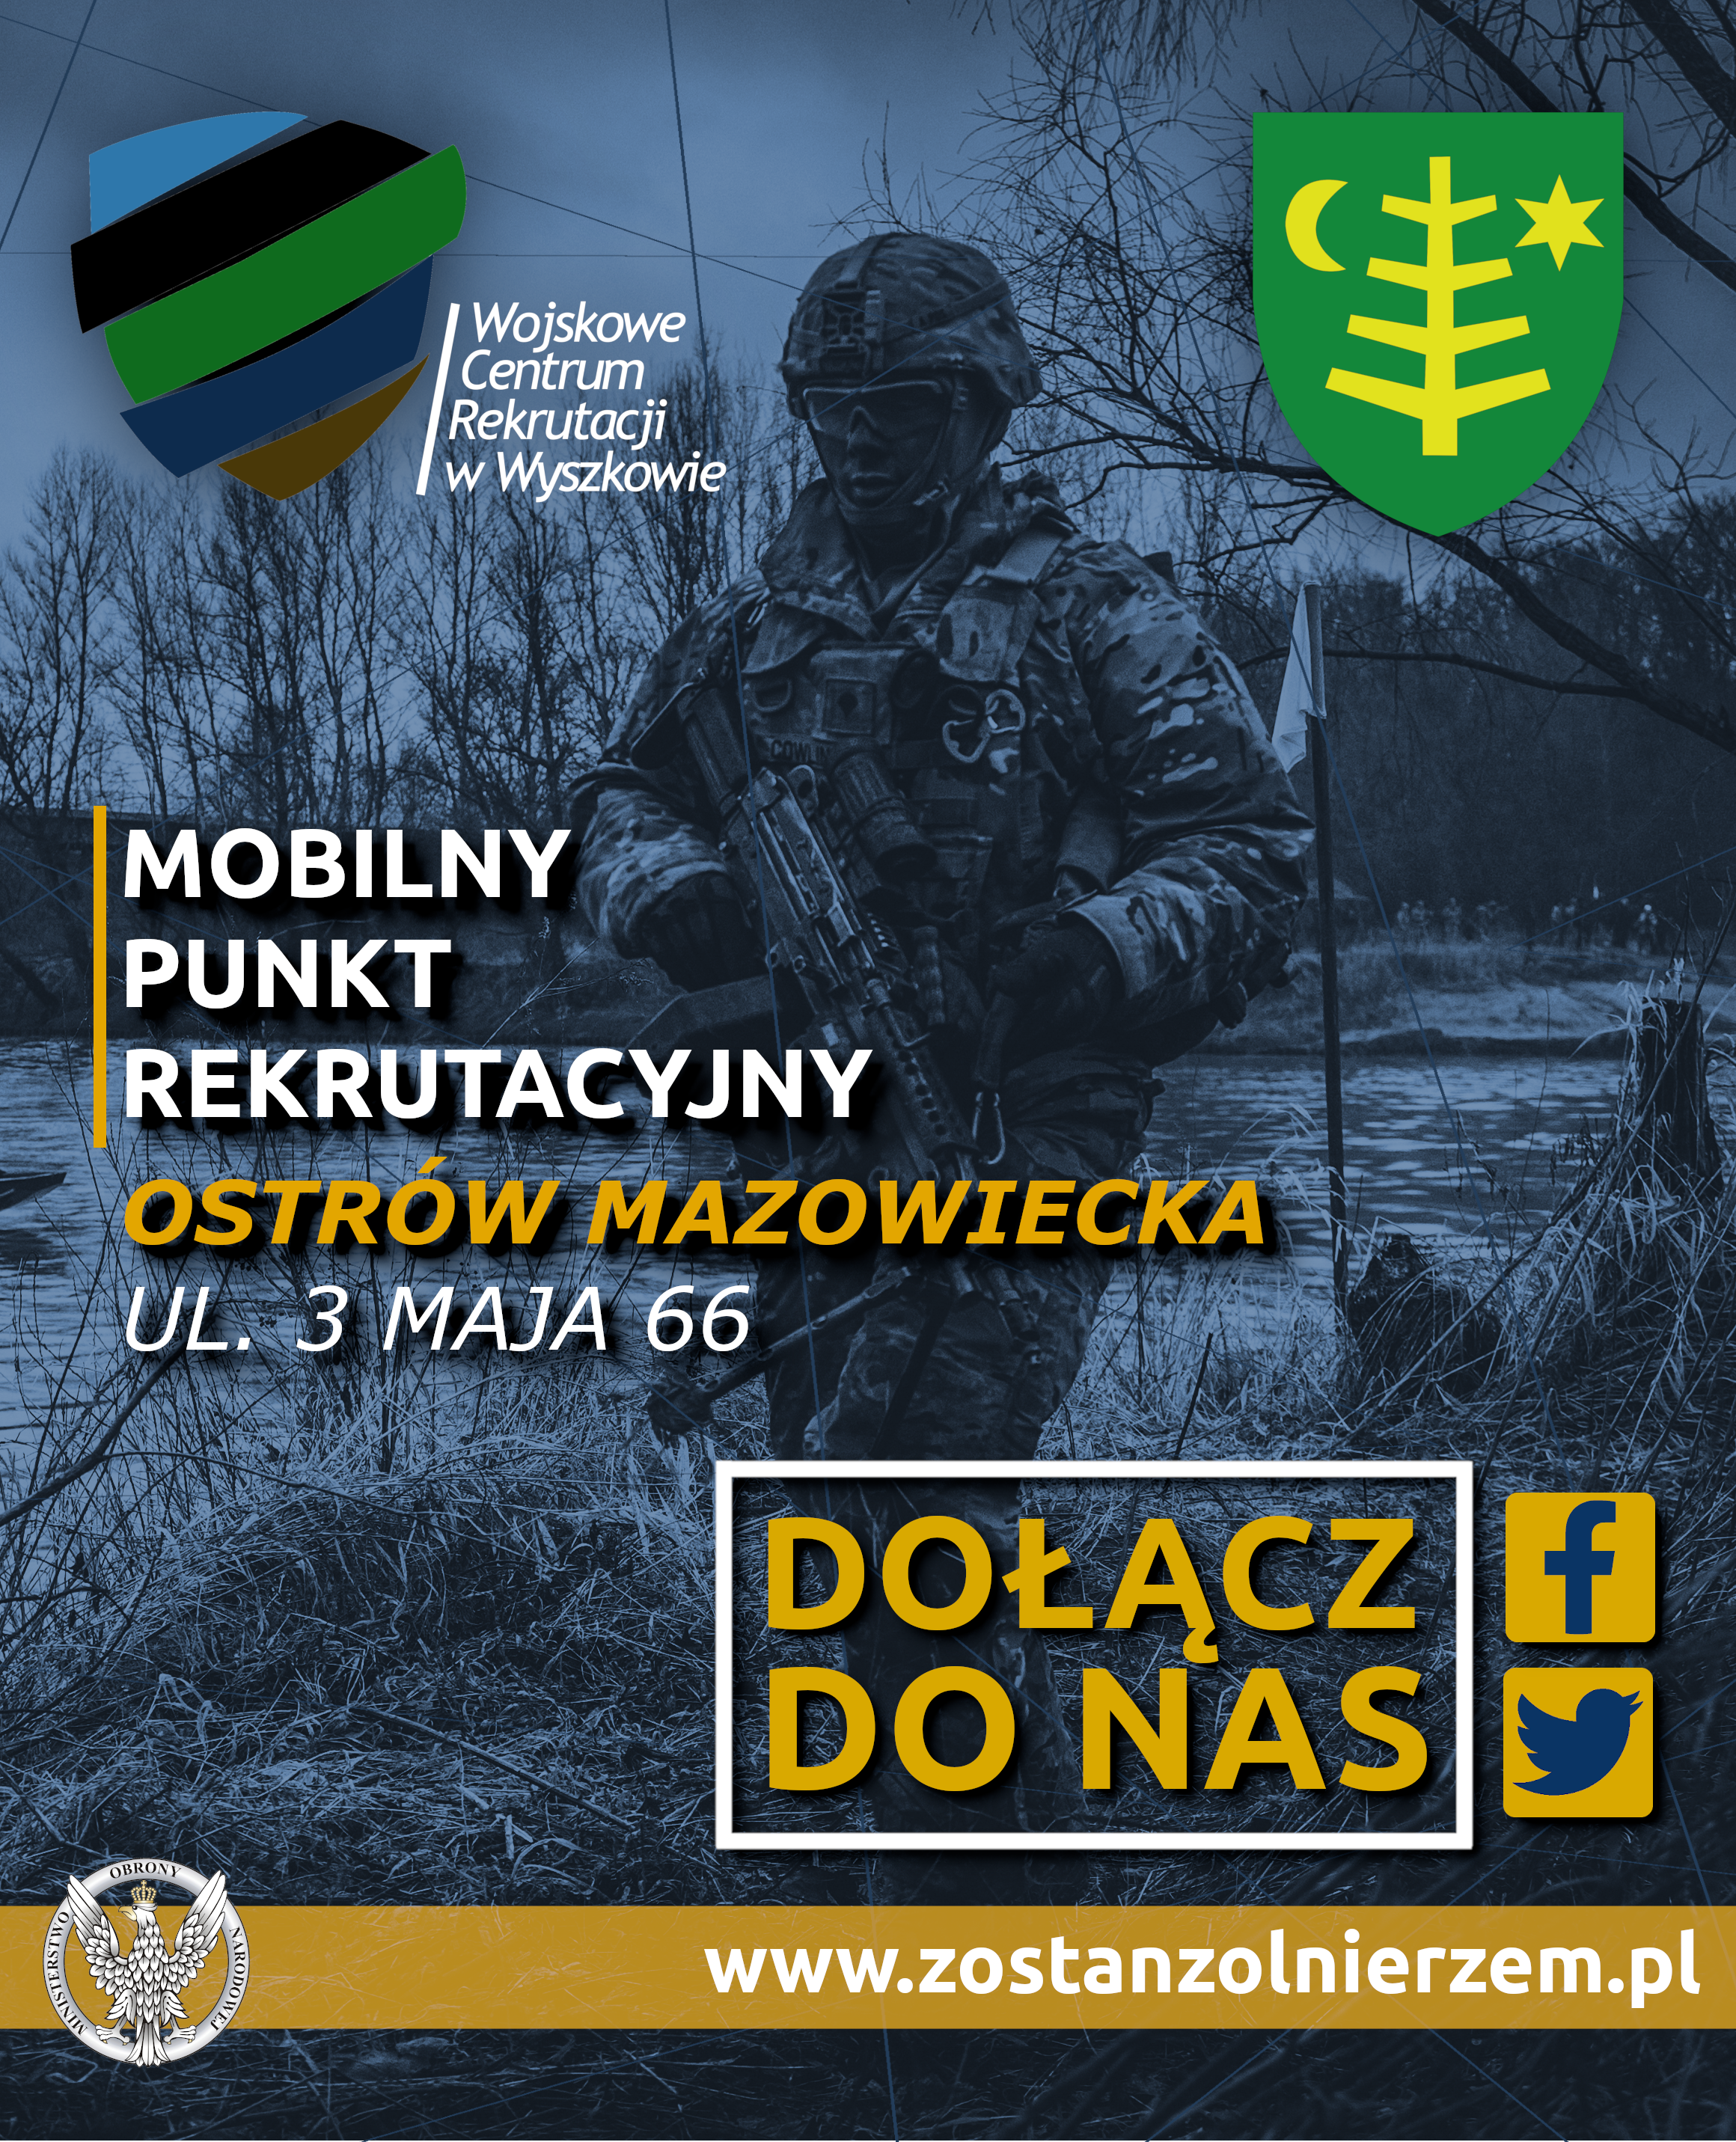 Plakat przedstawia umundurowanego żołnierza polskiego